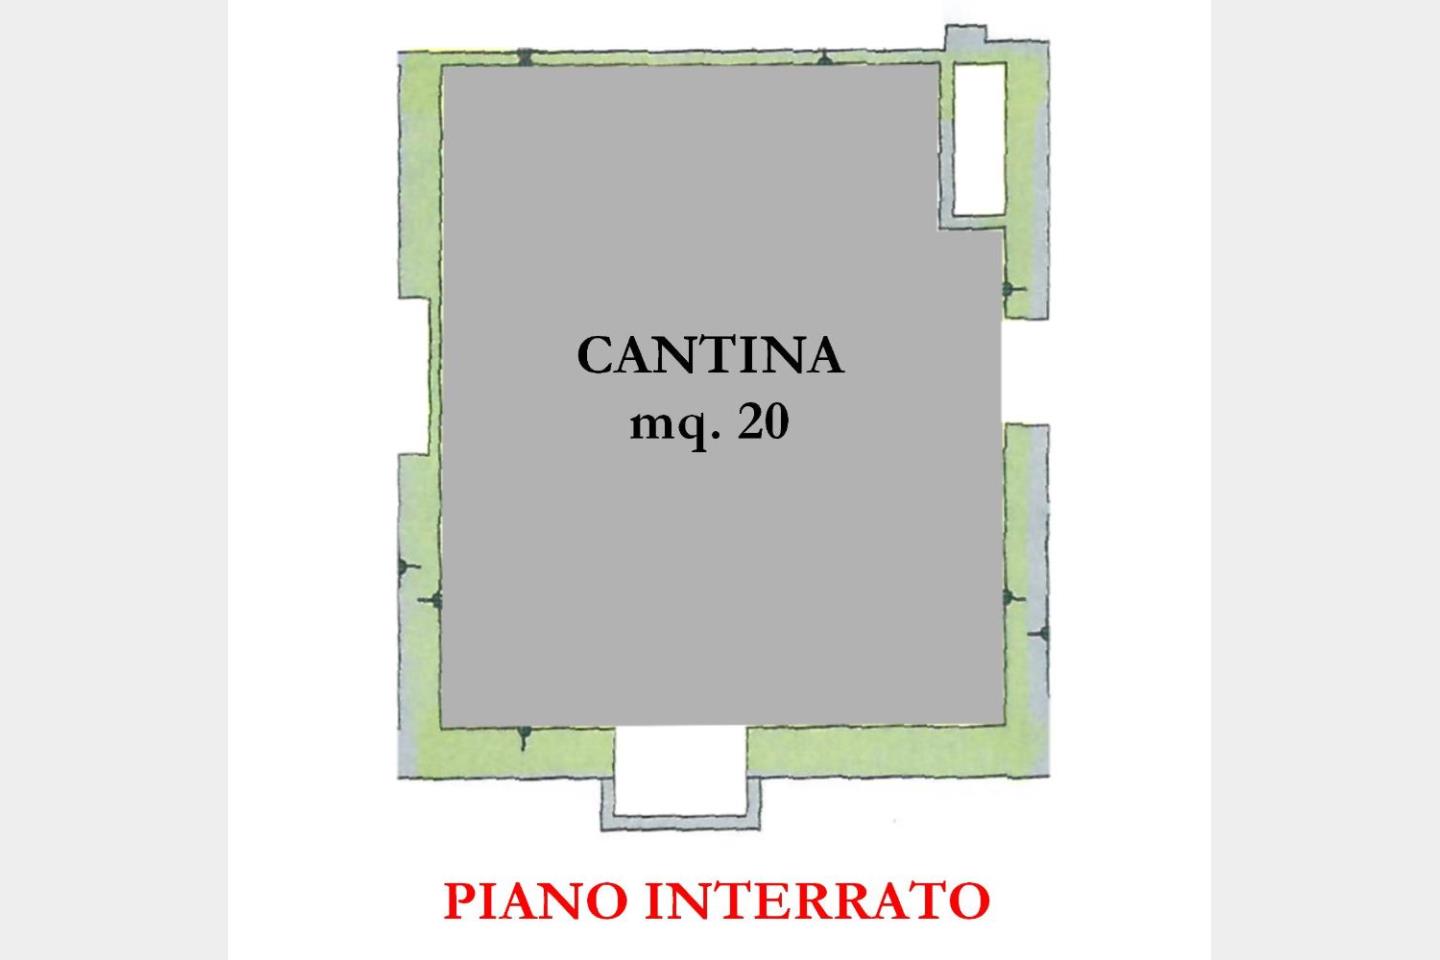 Piano Interrato - Cantina